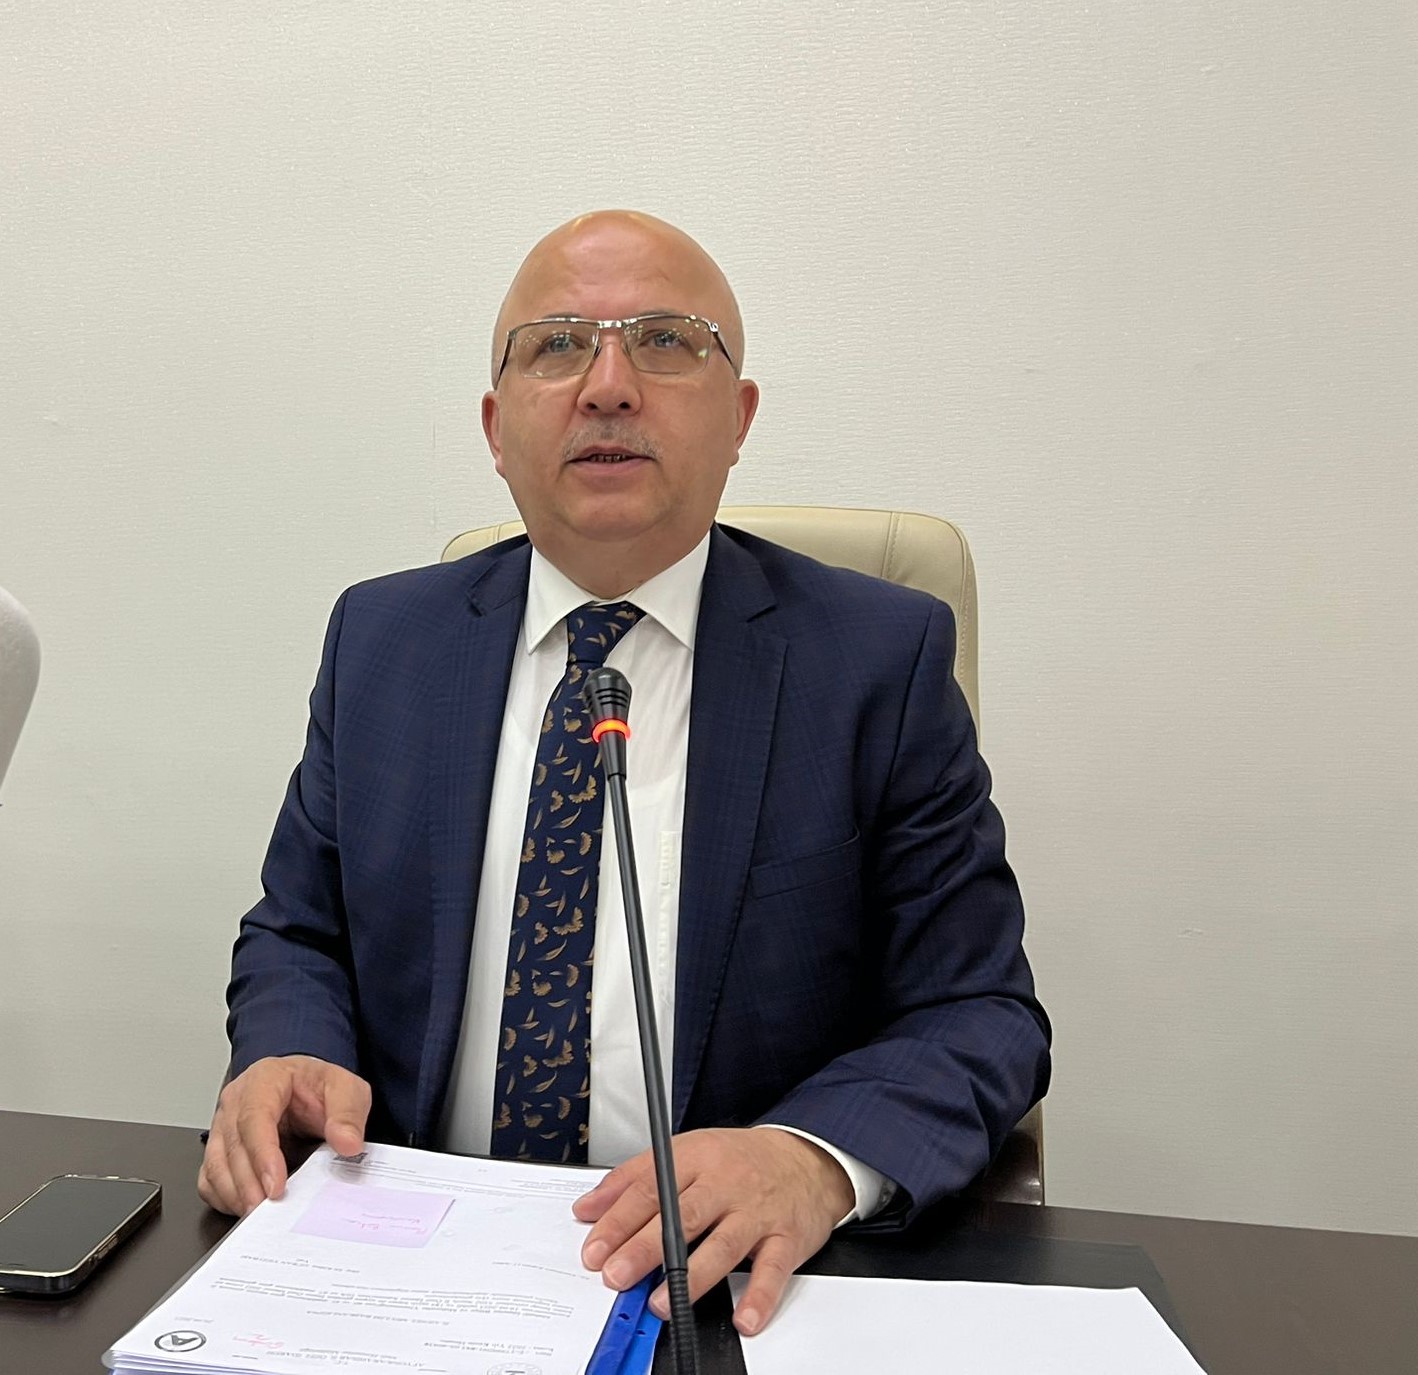 İGM Başkanı Çoban’dan görevden alınan genel sekreter ile ilgili açıklama: